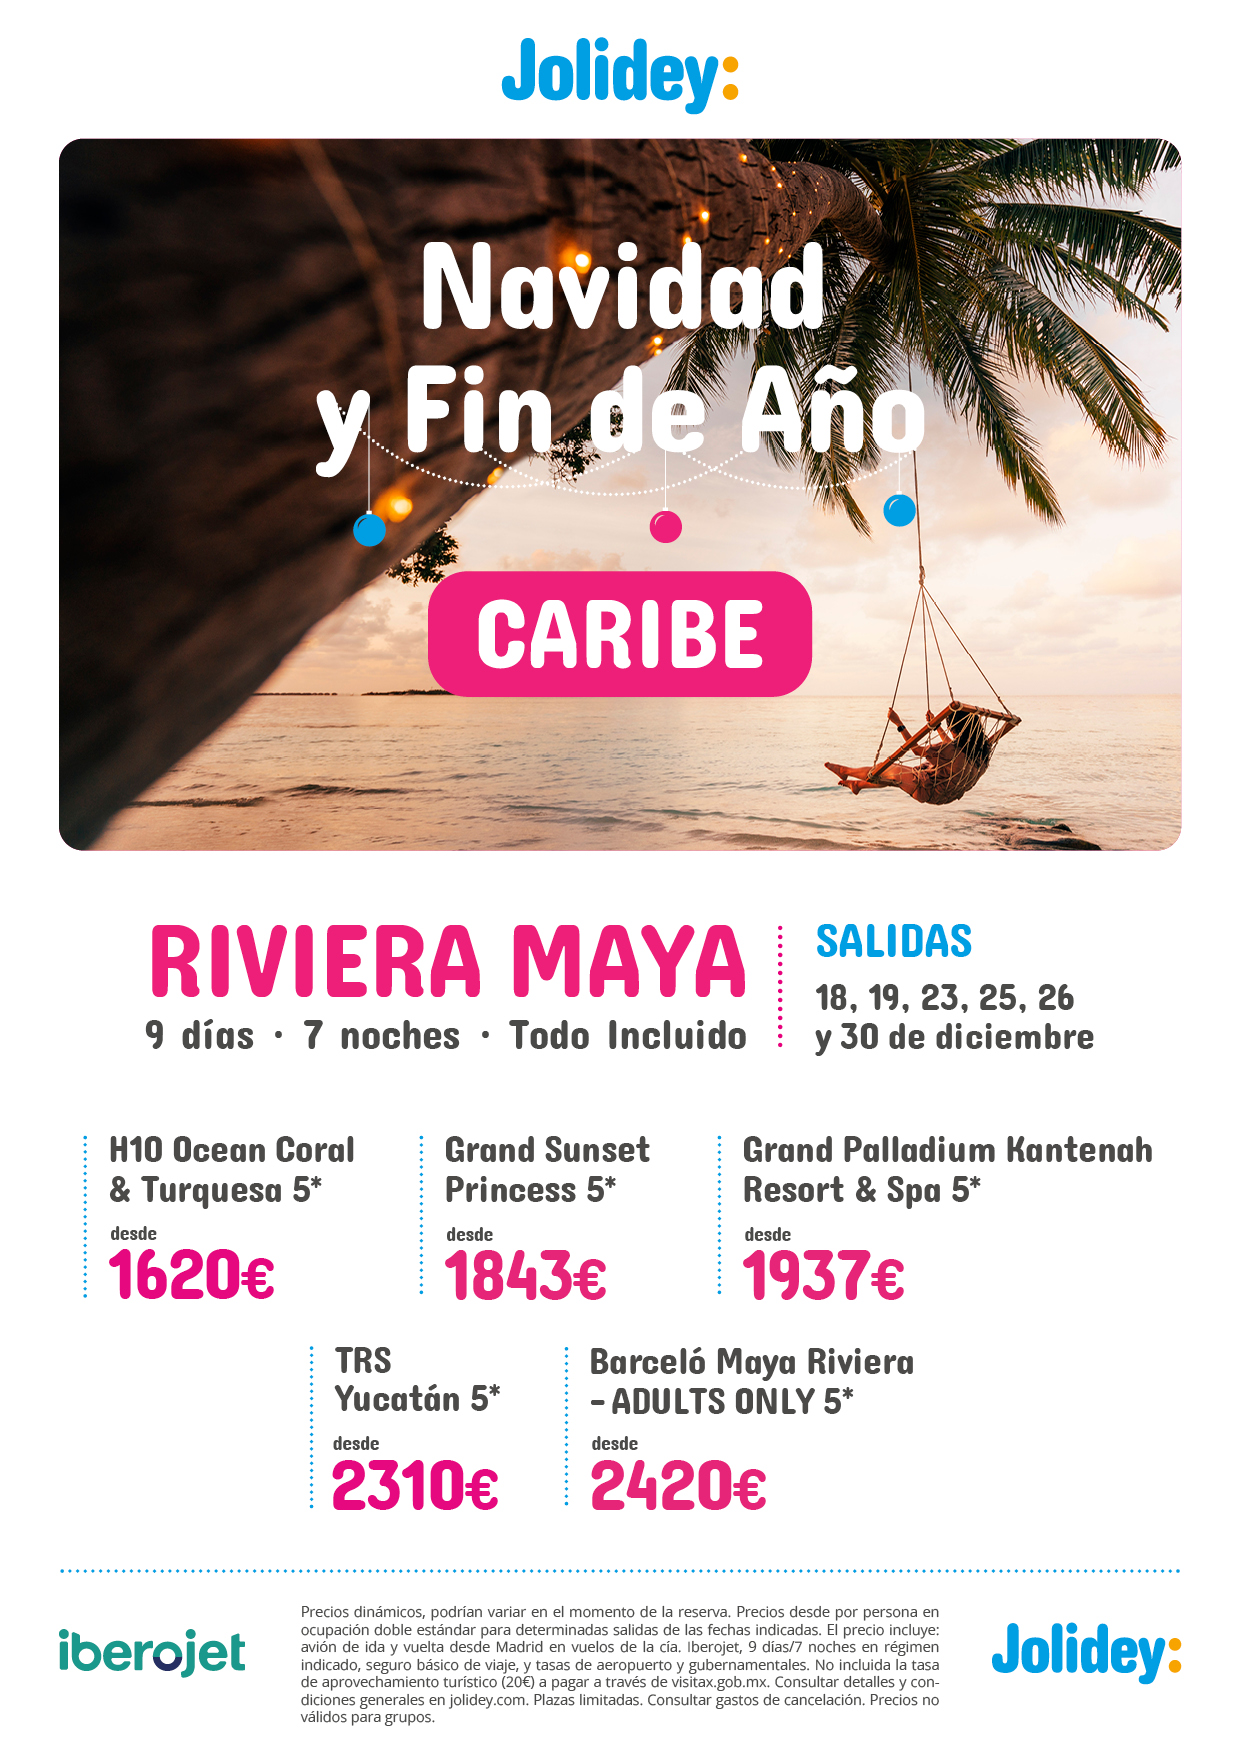 Ofertas Jolidey Navidad y Fin de Año 2022 en Mexico Riviera Maya hoteles 5 estrellas Todo Incluido 9 dias salidas en vuelo directo desde Madrid